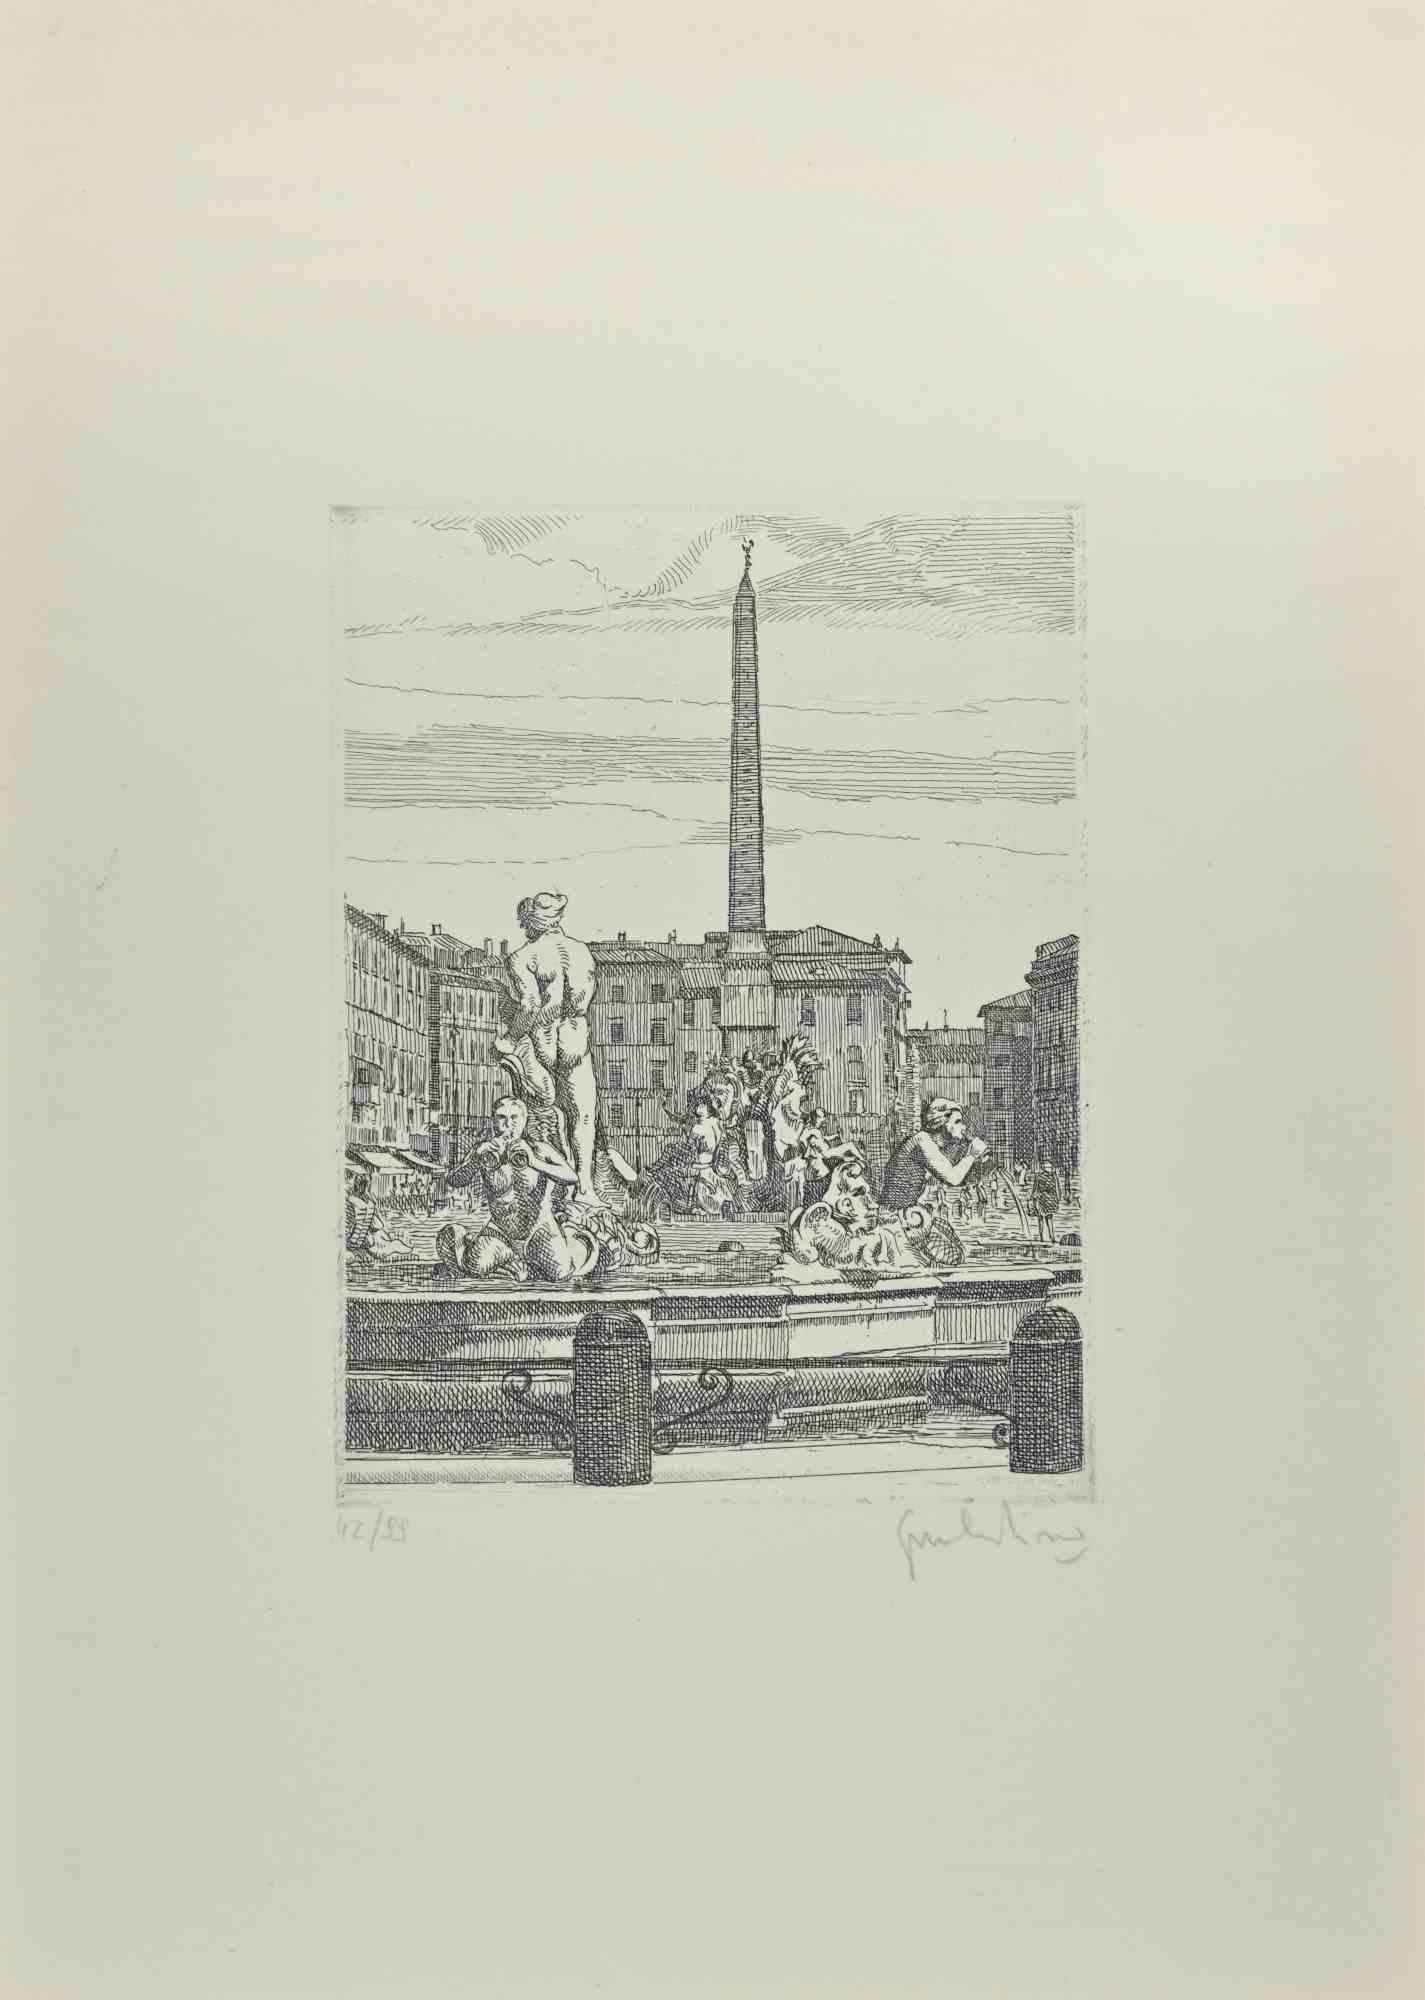 Navona Square - Fountain of 4 Rivers ist ein Kunstwerk von Giuseppe Malandrino.

Druck in Ätztechnik.

Vom Künstler in der rechten unteren Ecke mit Bleistift handsigniert.

Nummerierte Auflage von 99 Exemplaren.

Guter Zustand. 

Dieses Kunstwerk